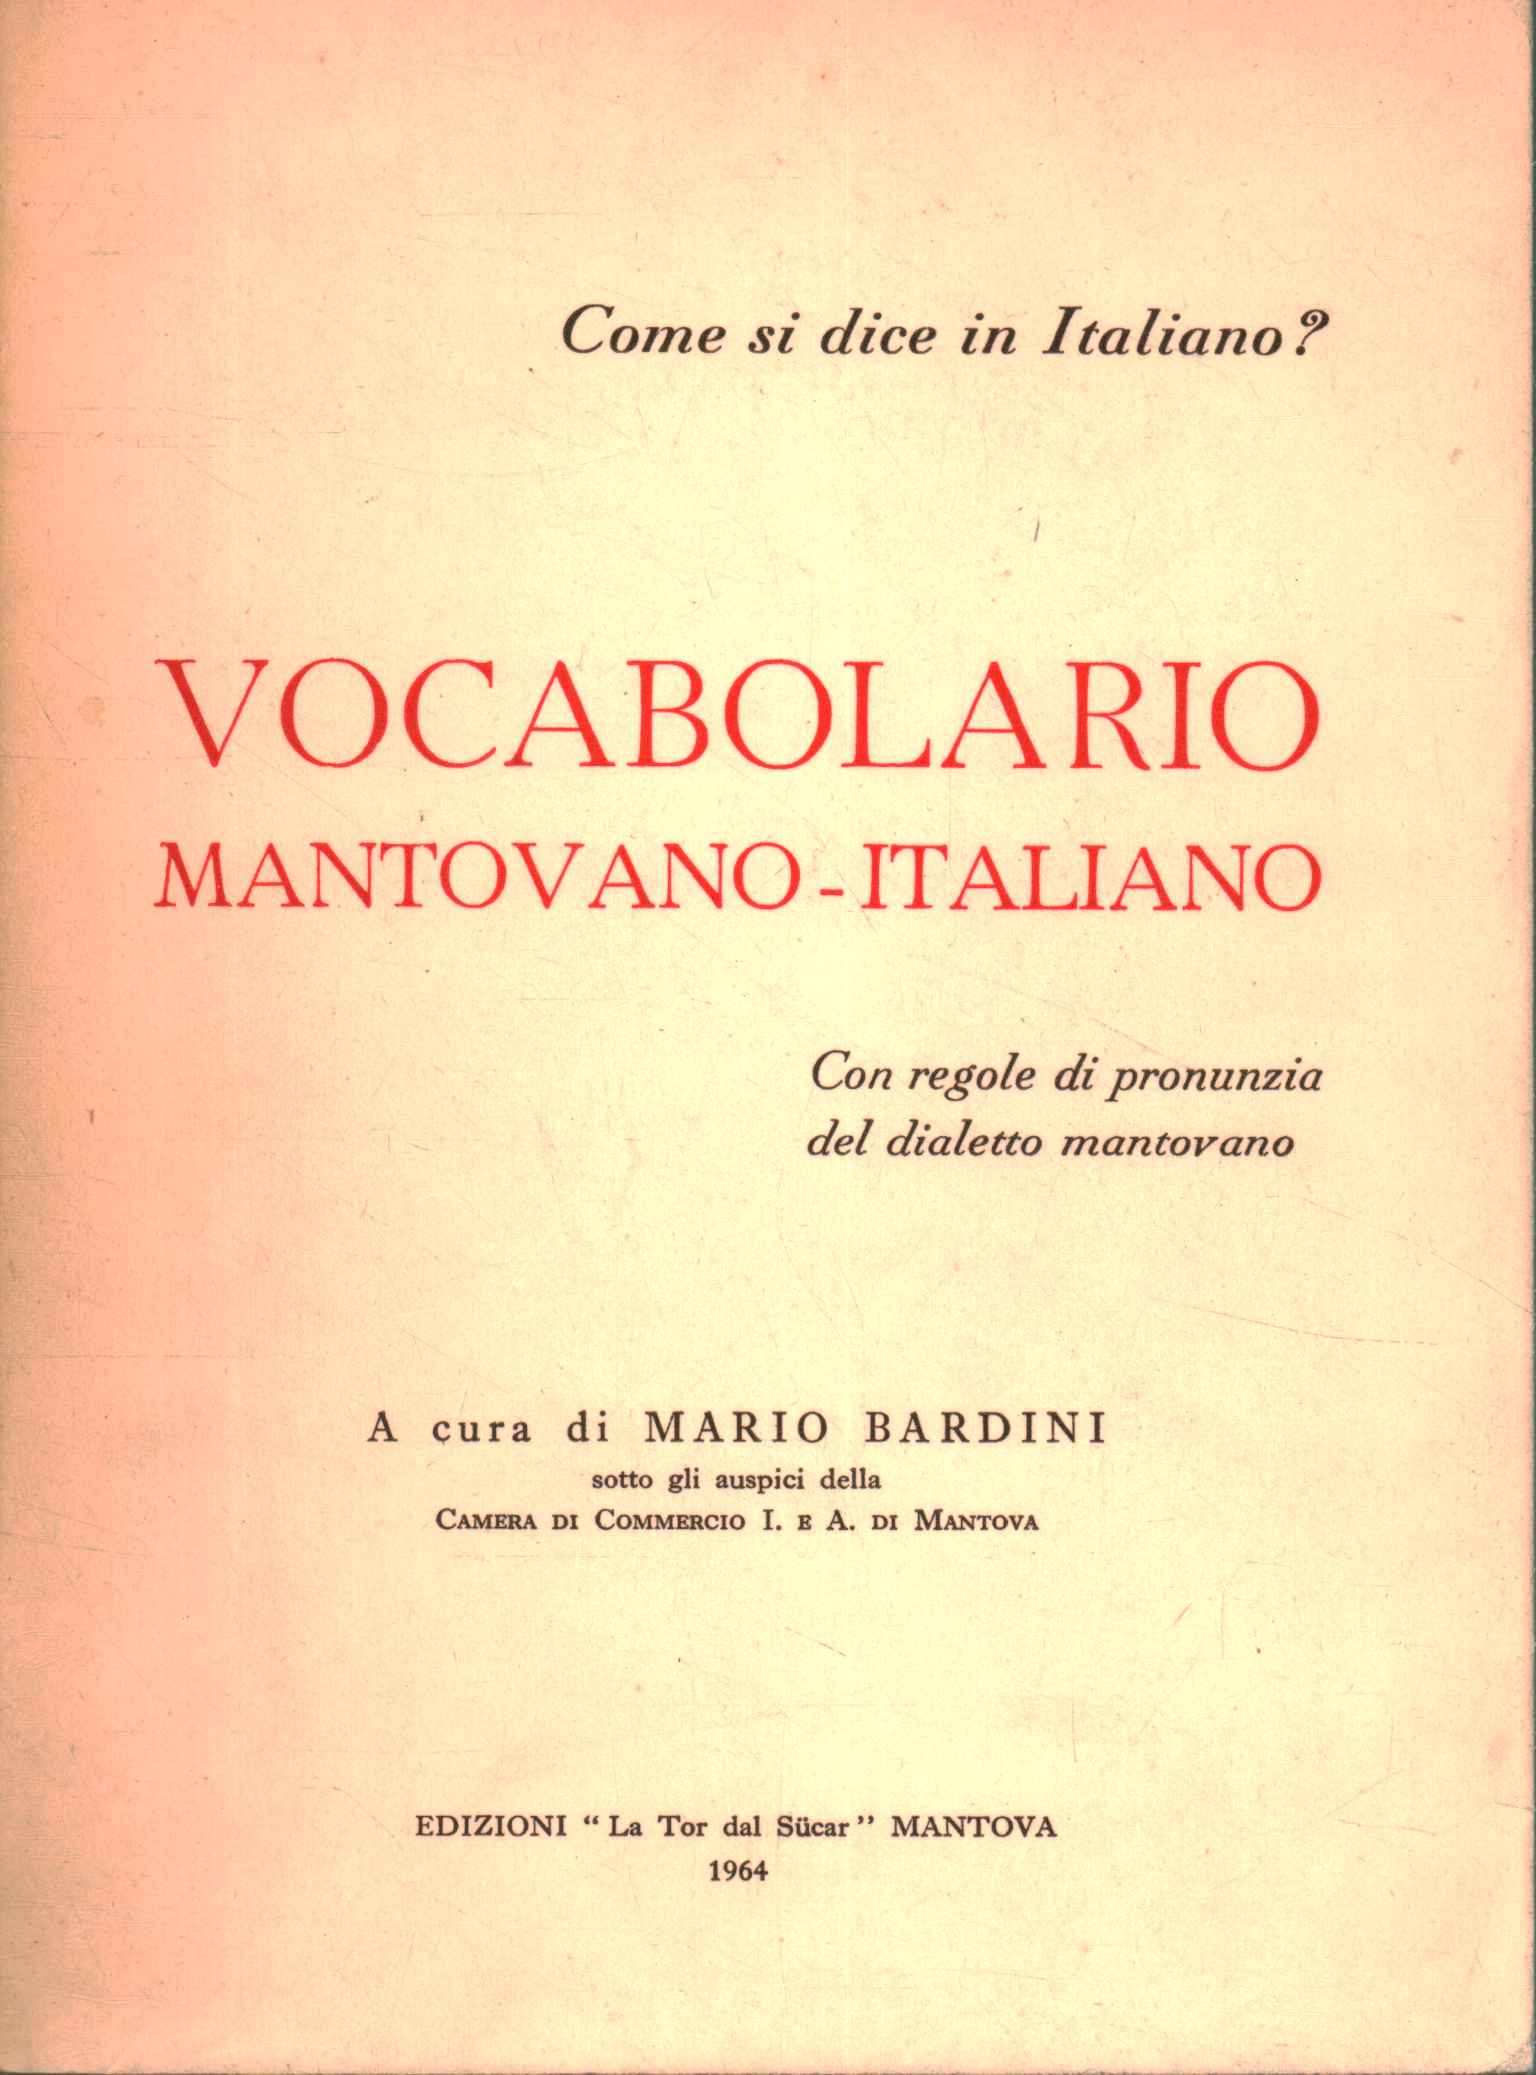 Mantuanisch-italienischer Wortschatz